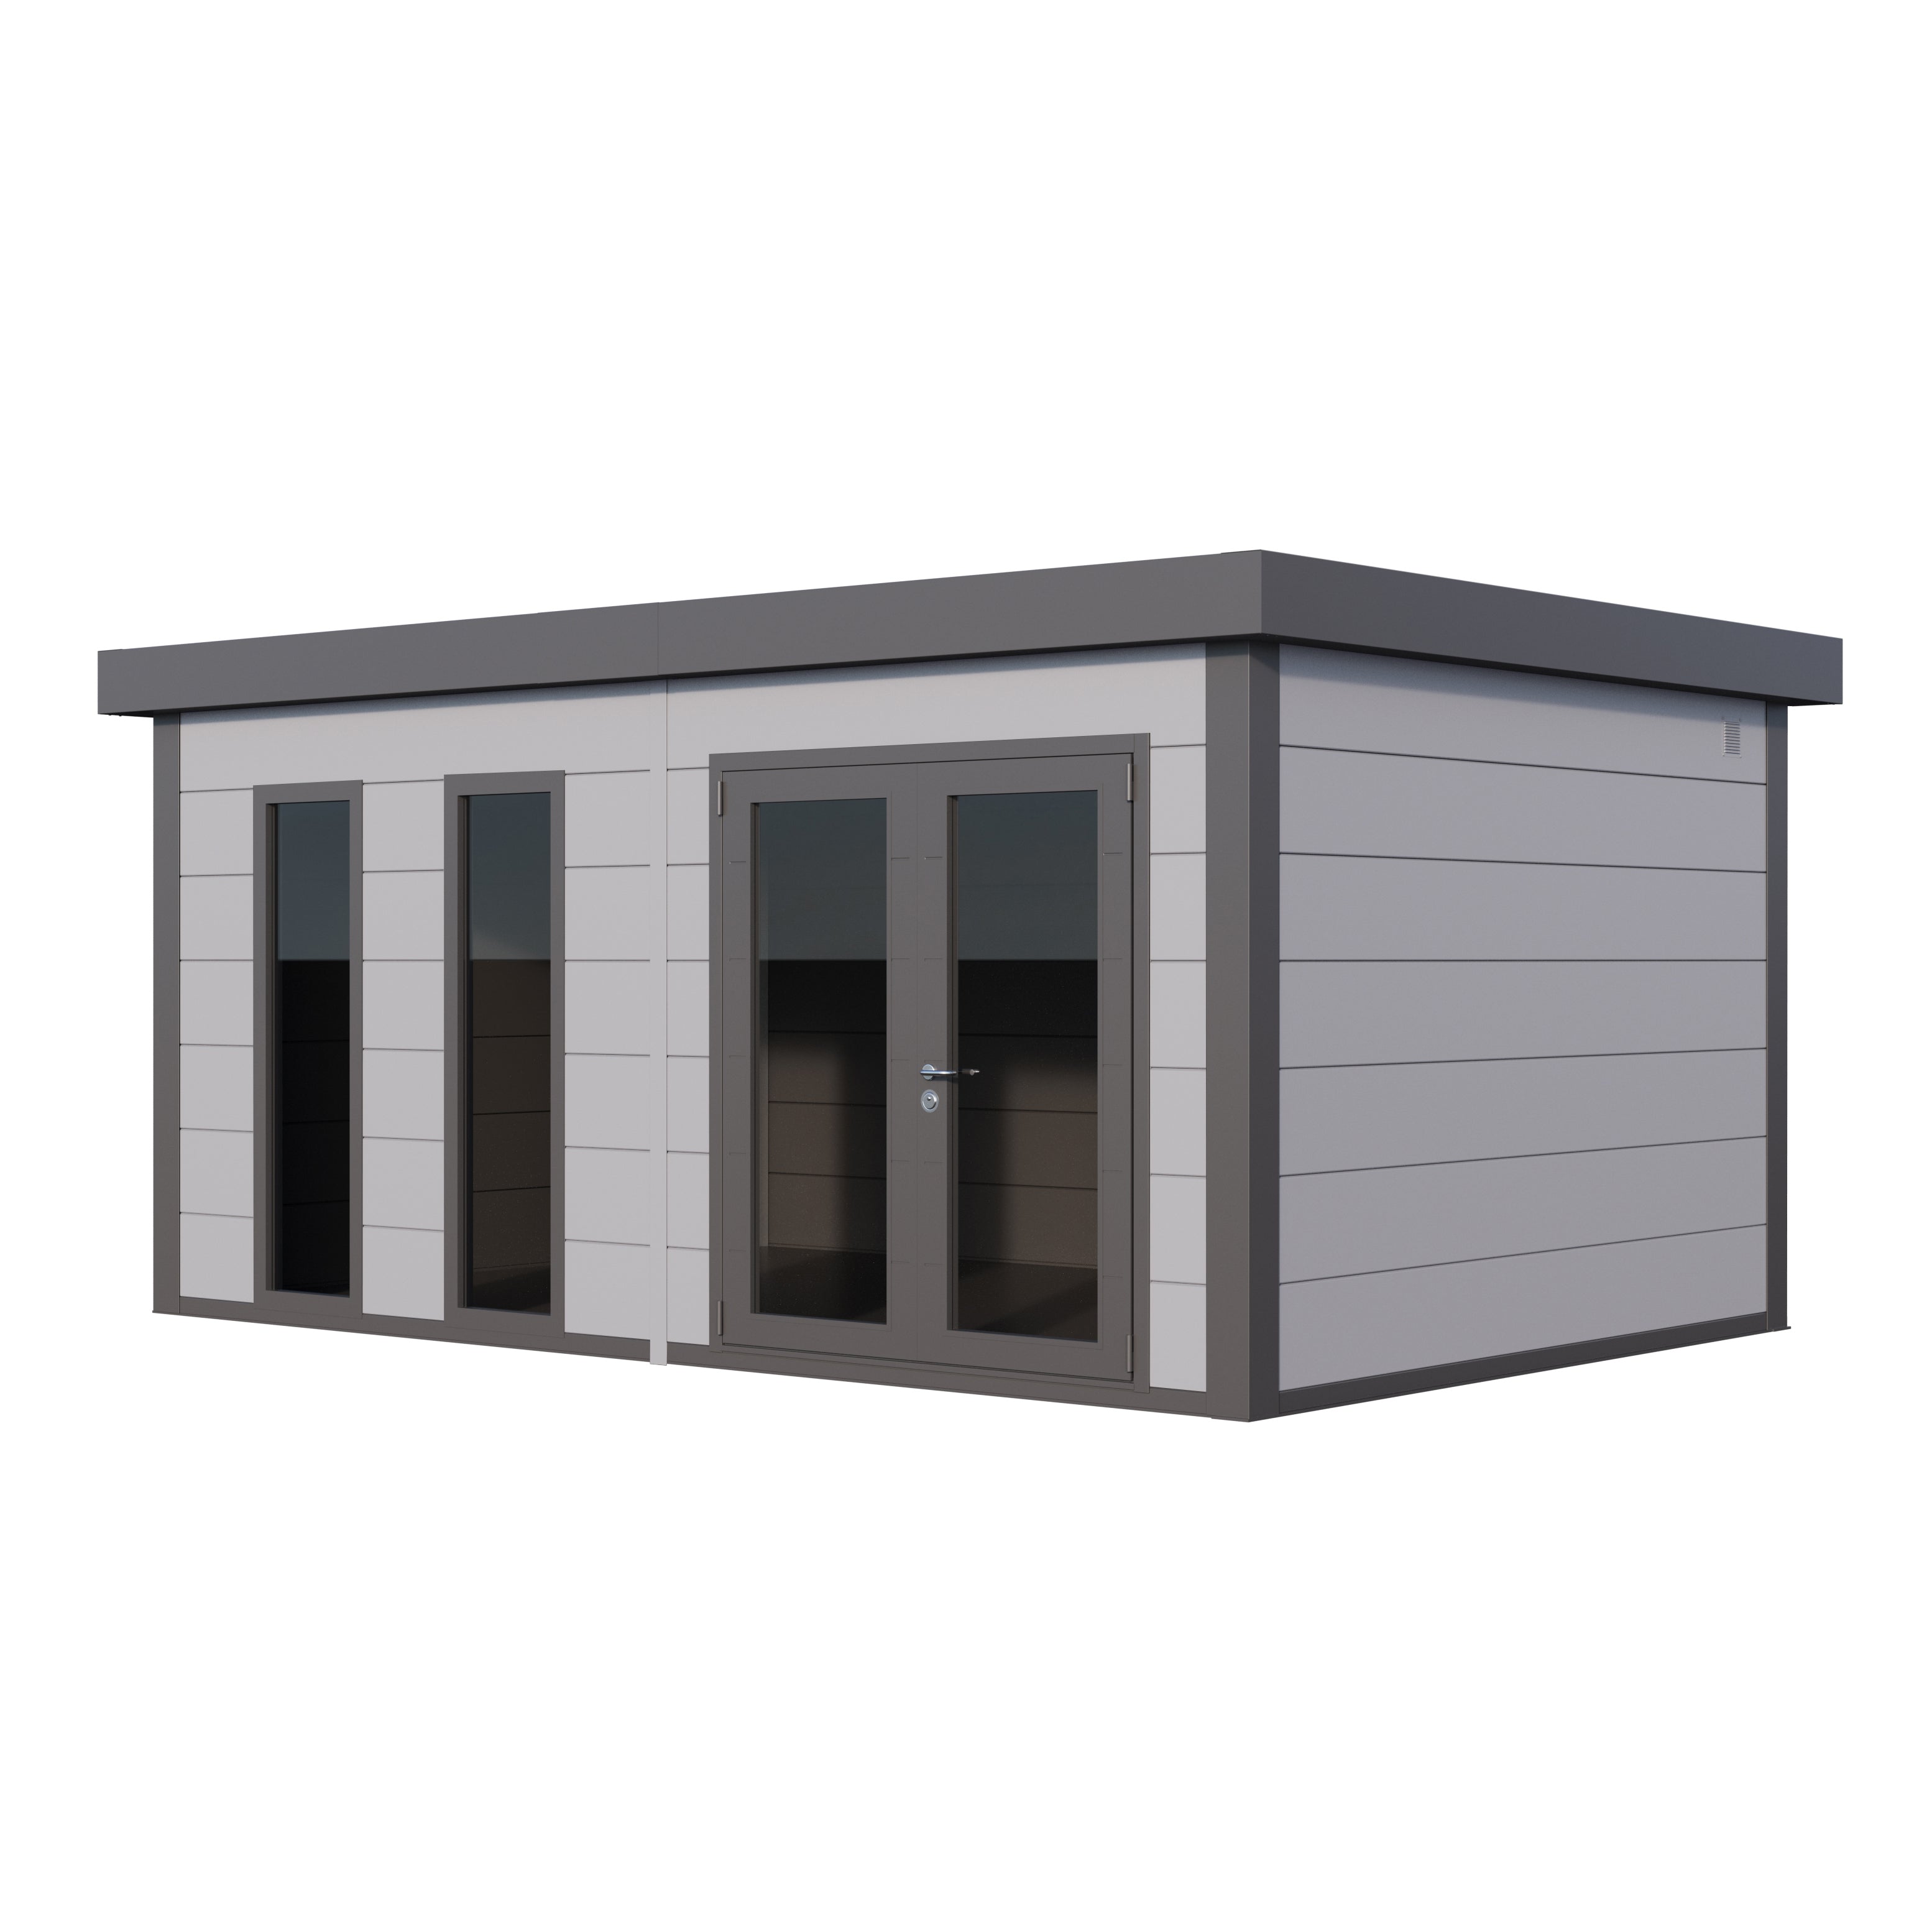 Luminato 5436 Steel Kit Garden Room Building - Light Grey